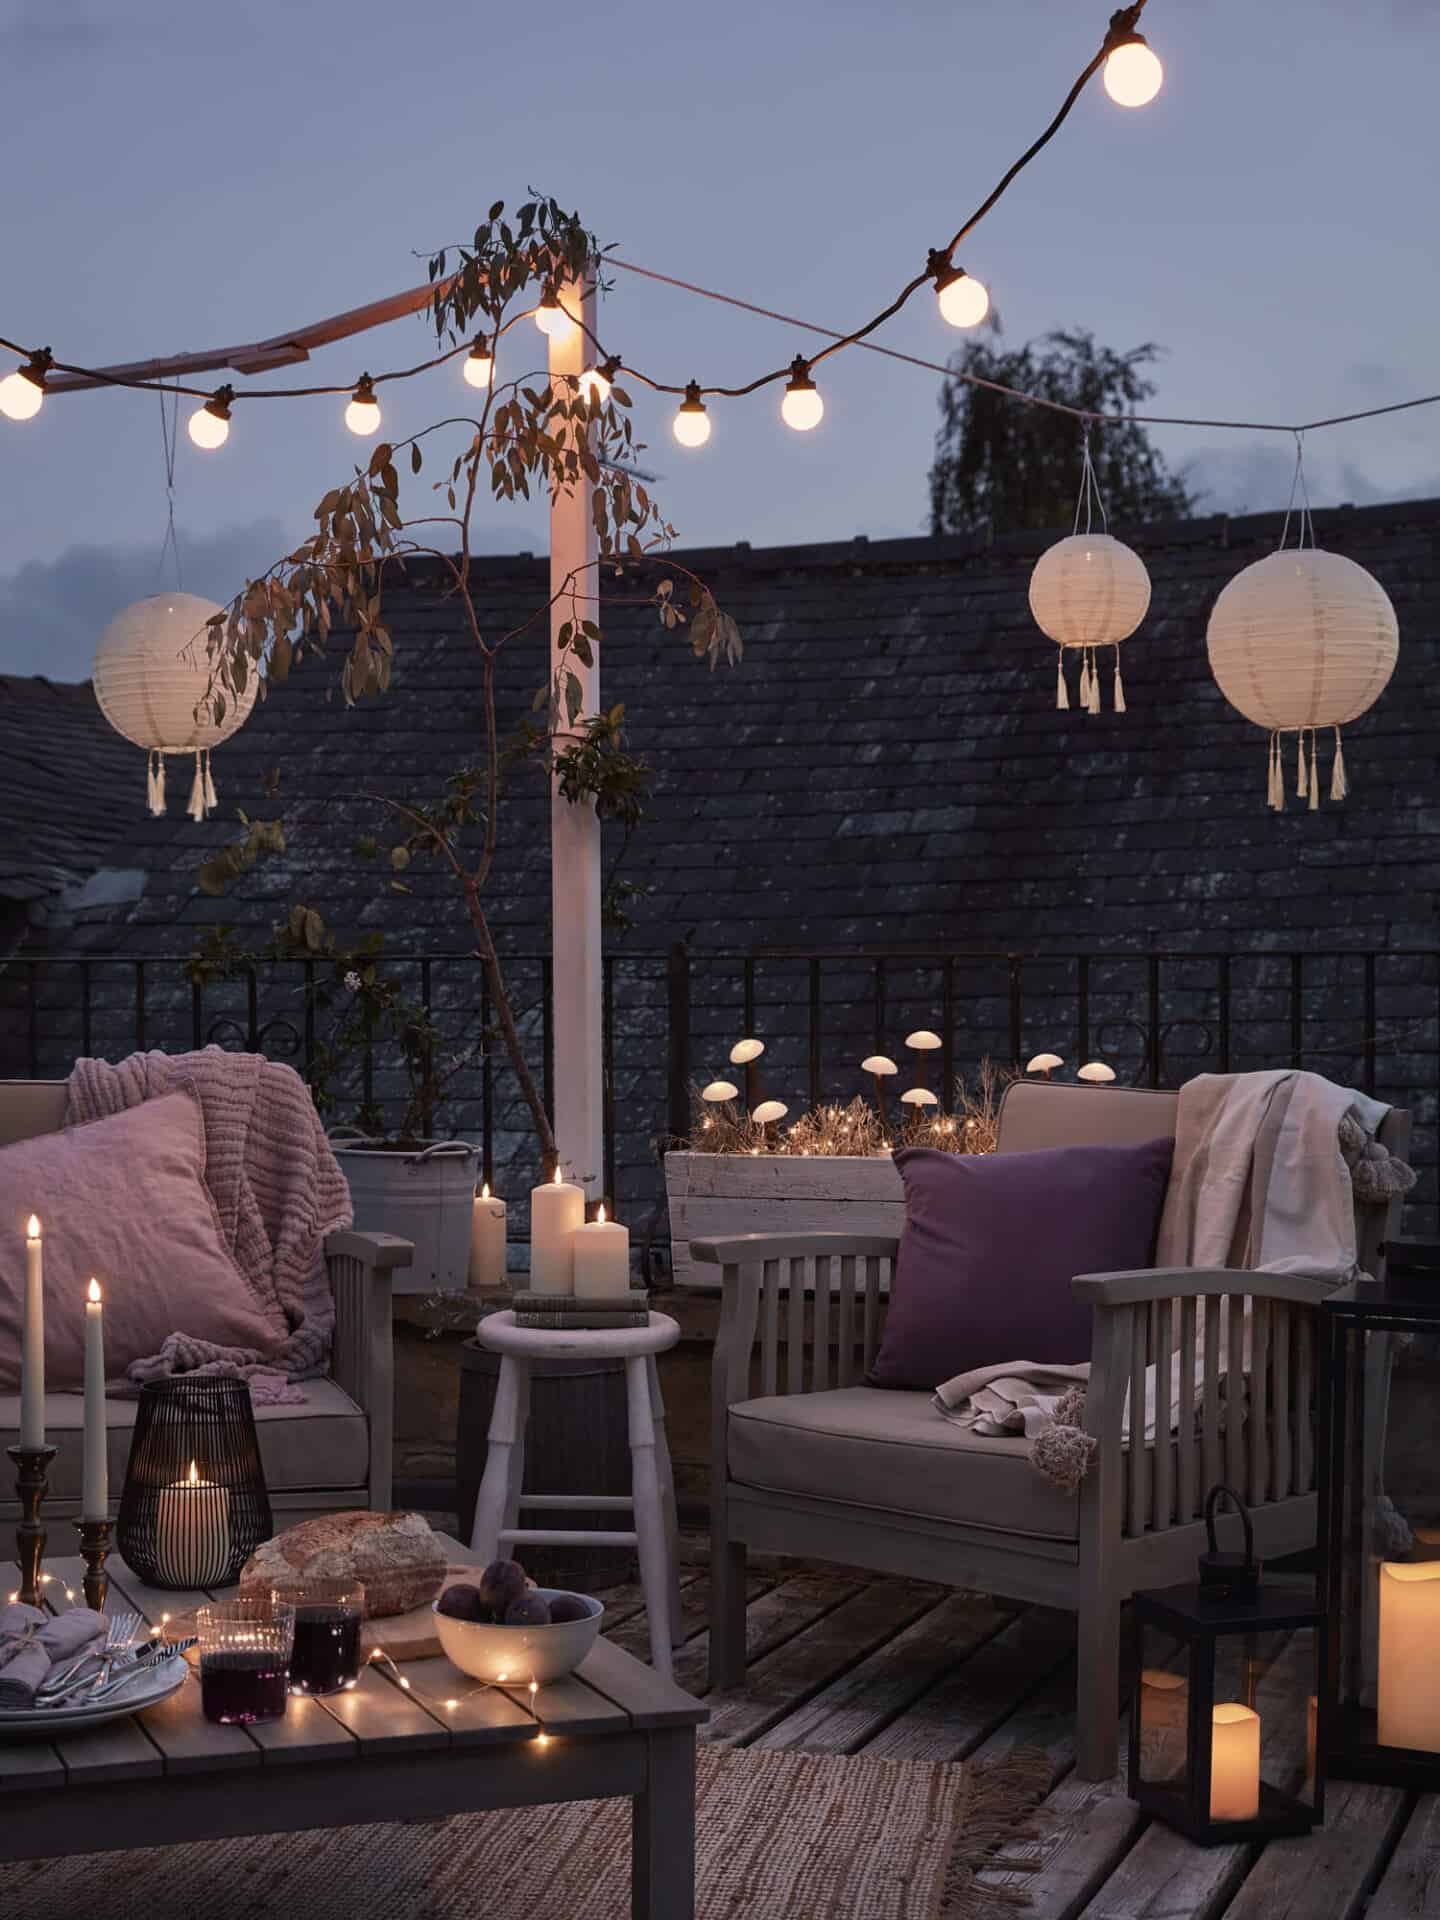 Terrasse mit Holzsitzen, Decken, Kerzen, Girlandenlichtern, Pilzlichtern und Solarlaternen